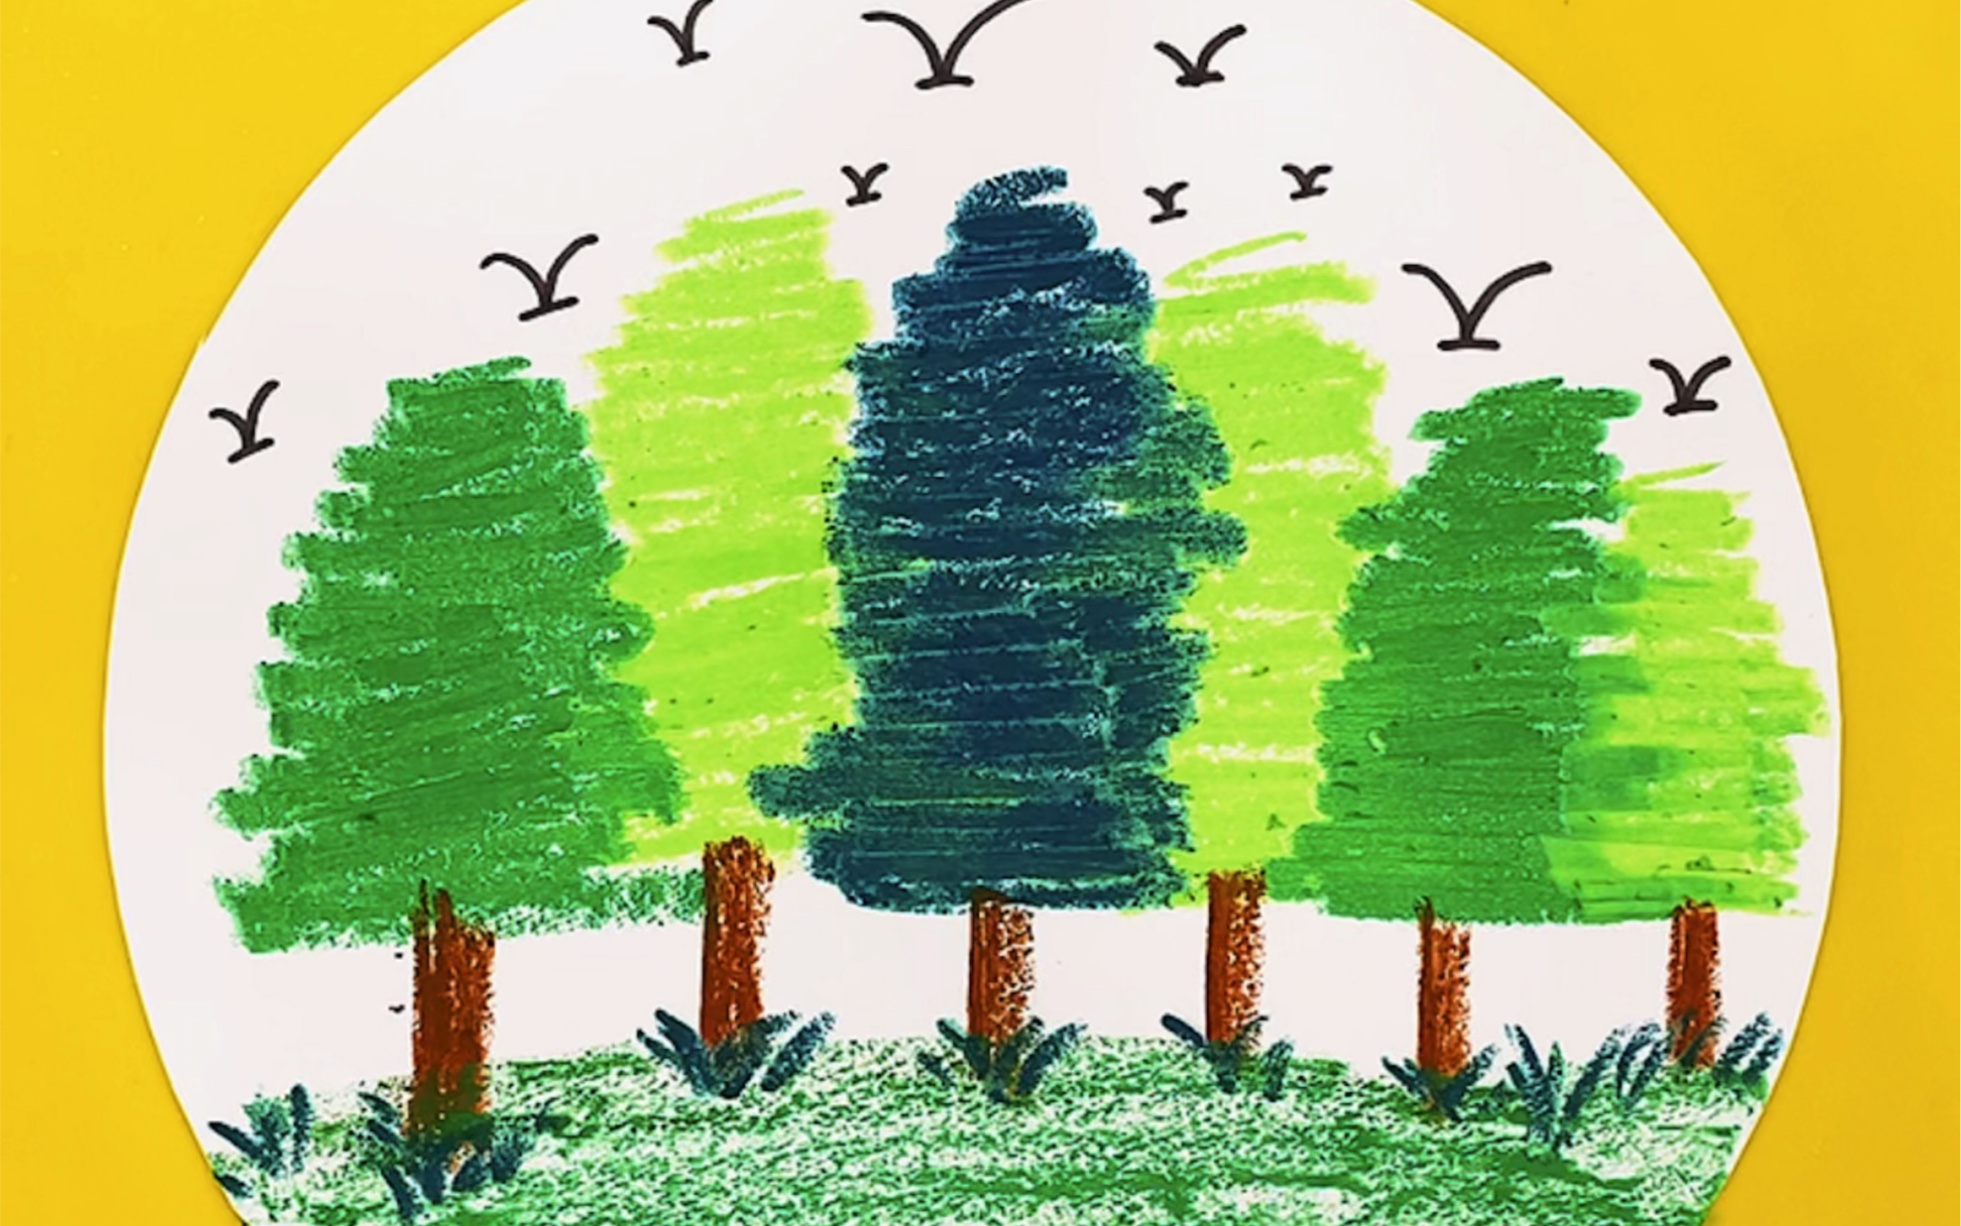 油画棒风景画:简单教你学会画小树林